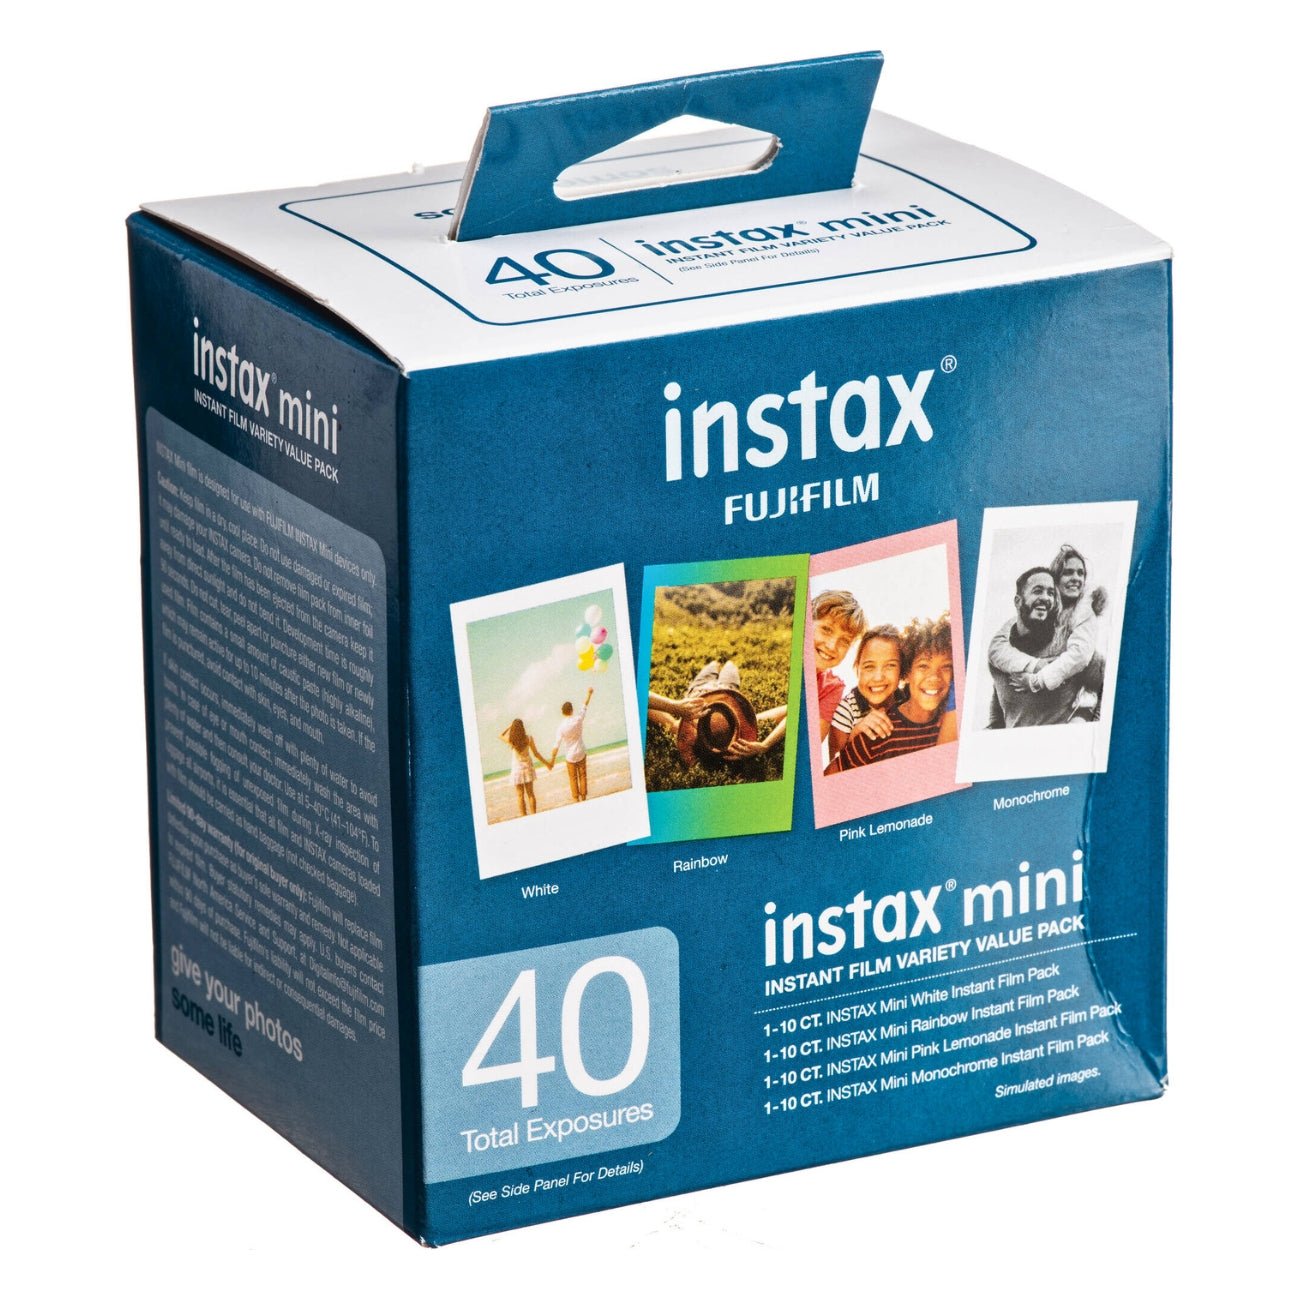 FUJIFILM INSTAX Mini Instant Film Variety Value Pack (40 Exposures)